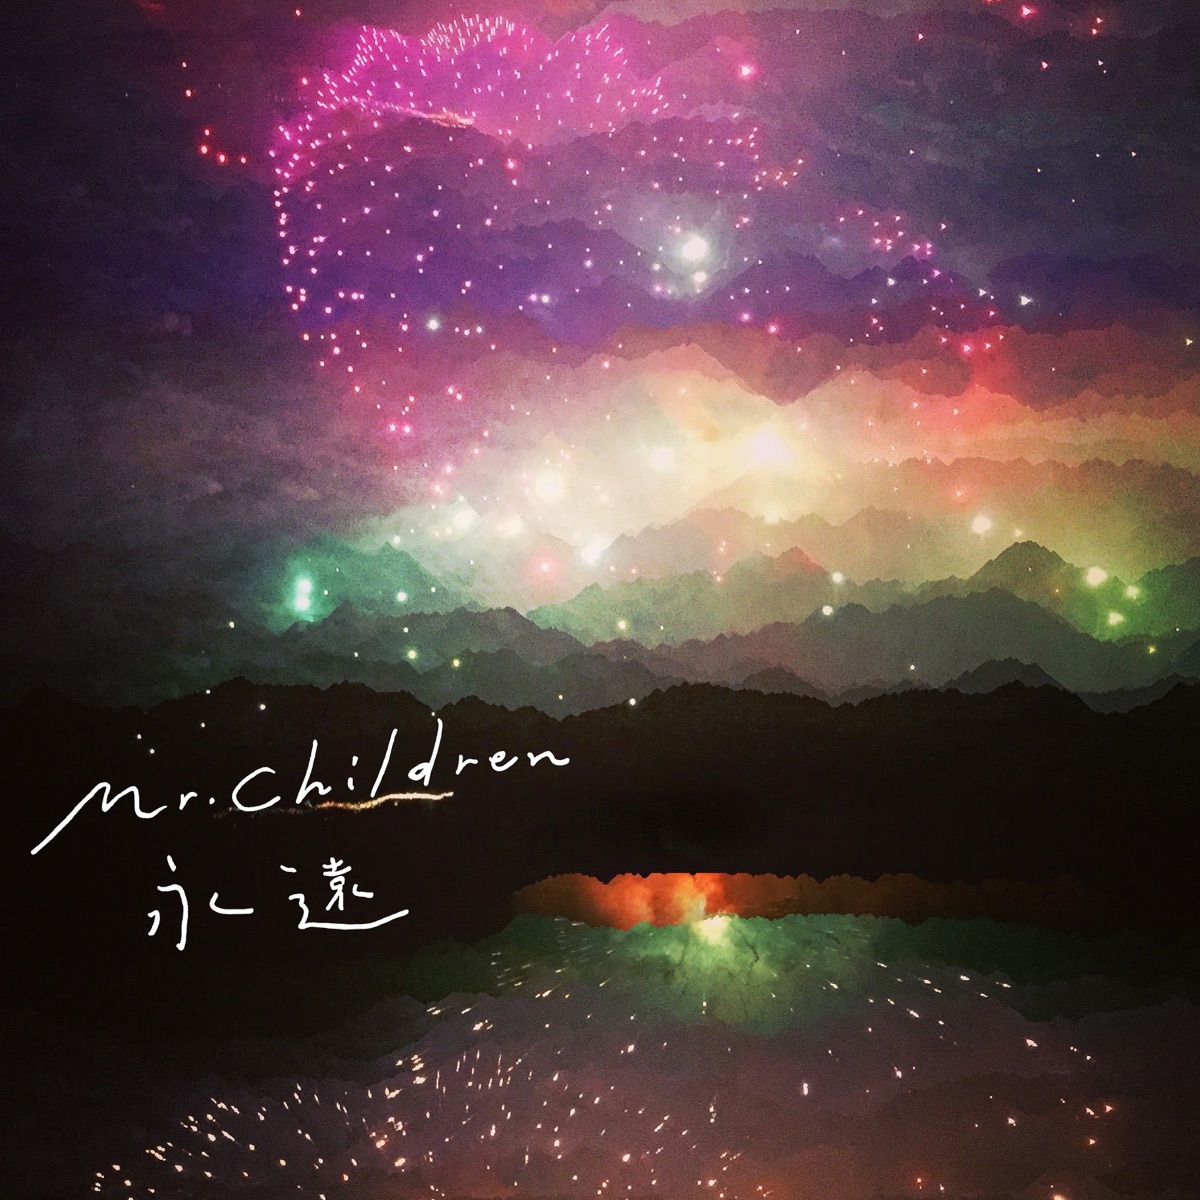 Cover art for『Mr.Children - 永遠』from the release『Eien